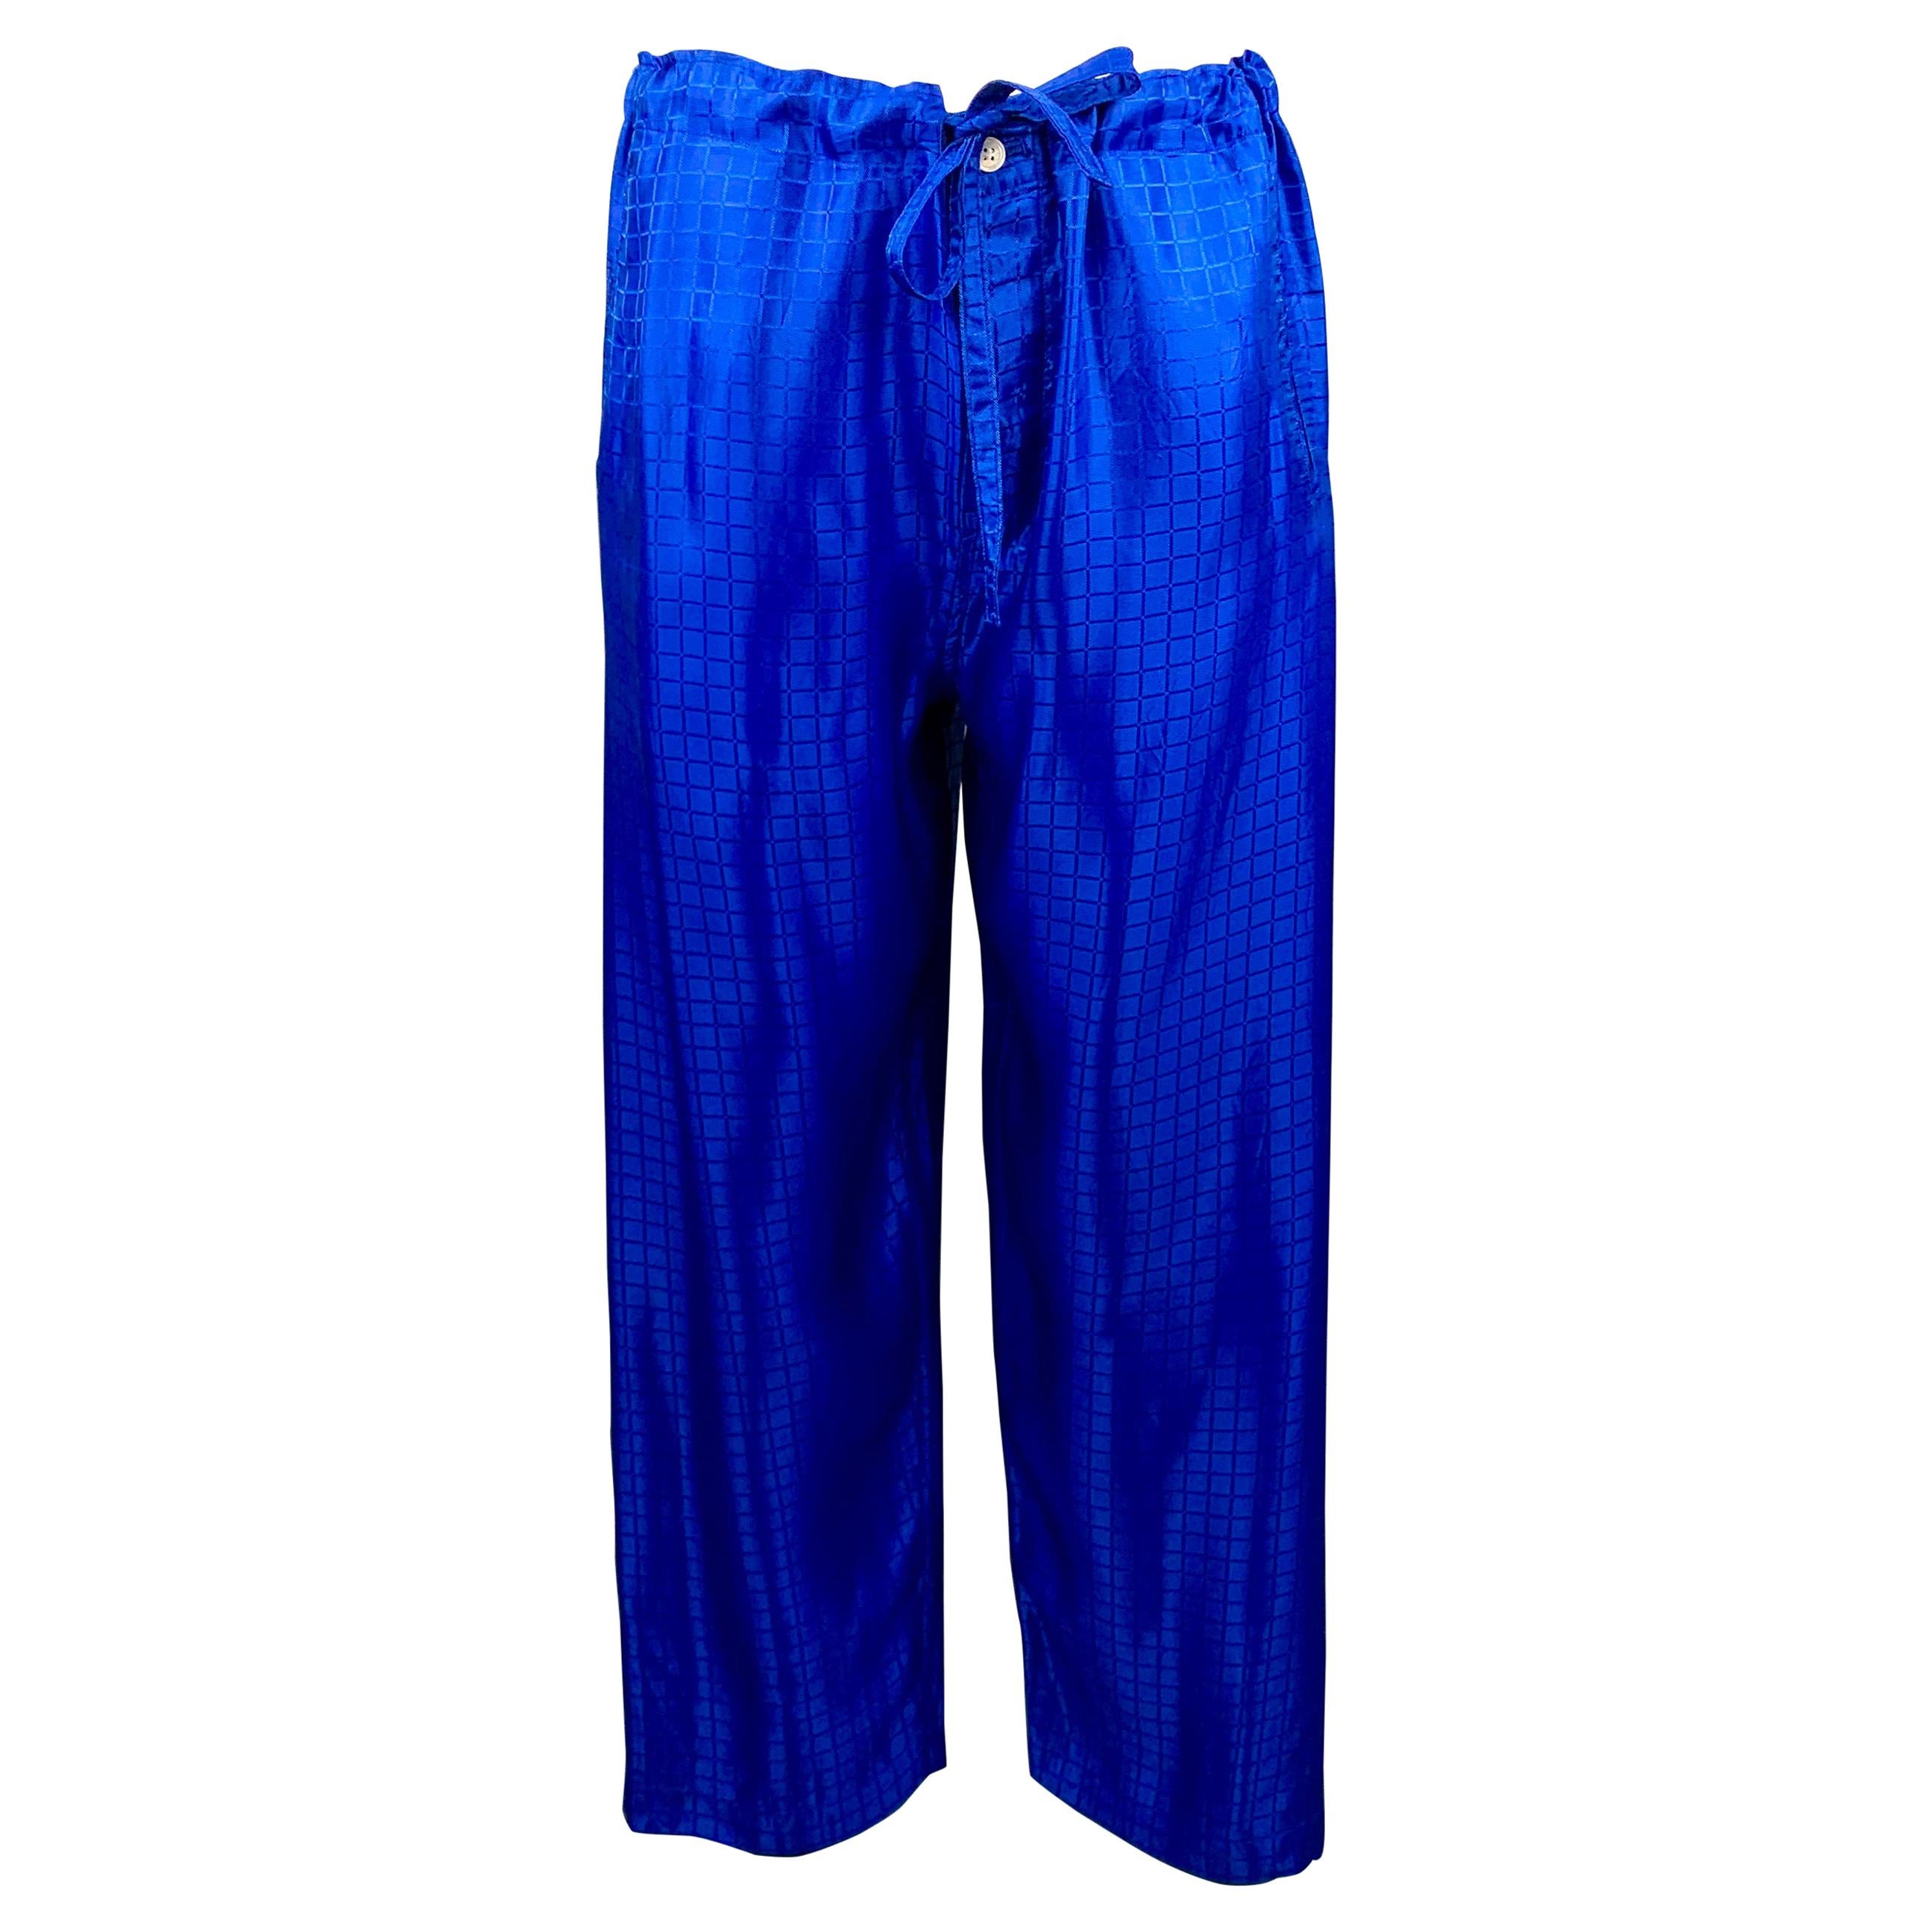 COMME des GARCONS HOMME PLUS Size S Royal Blue Window Pane Drawstring Pants